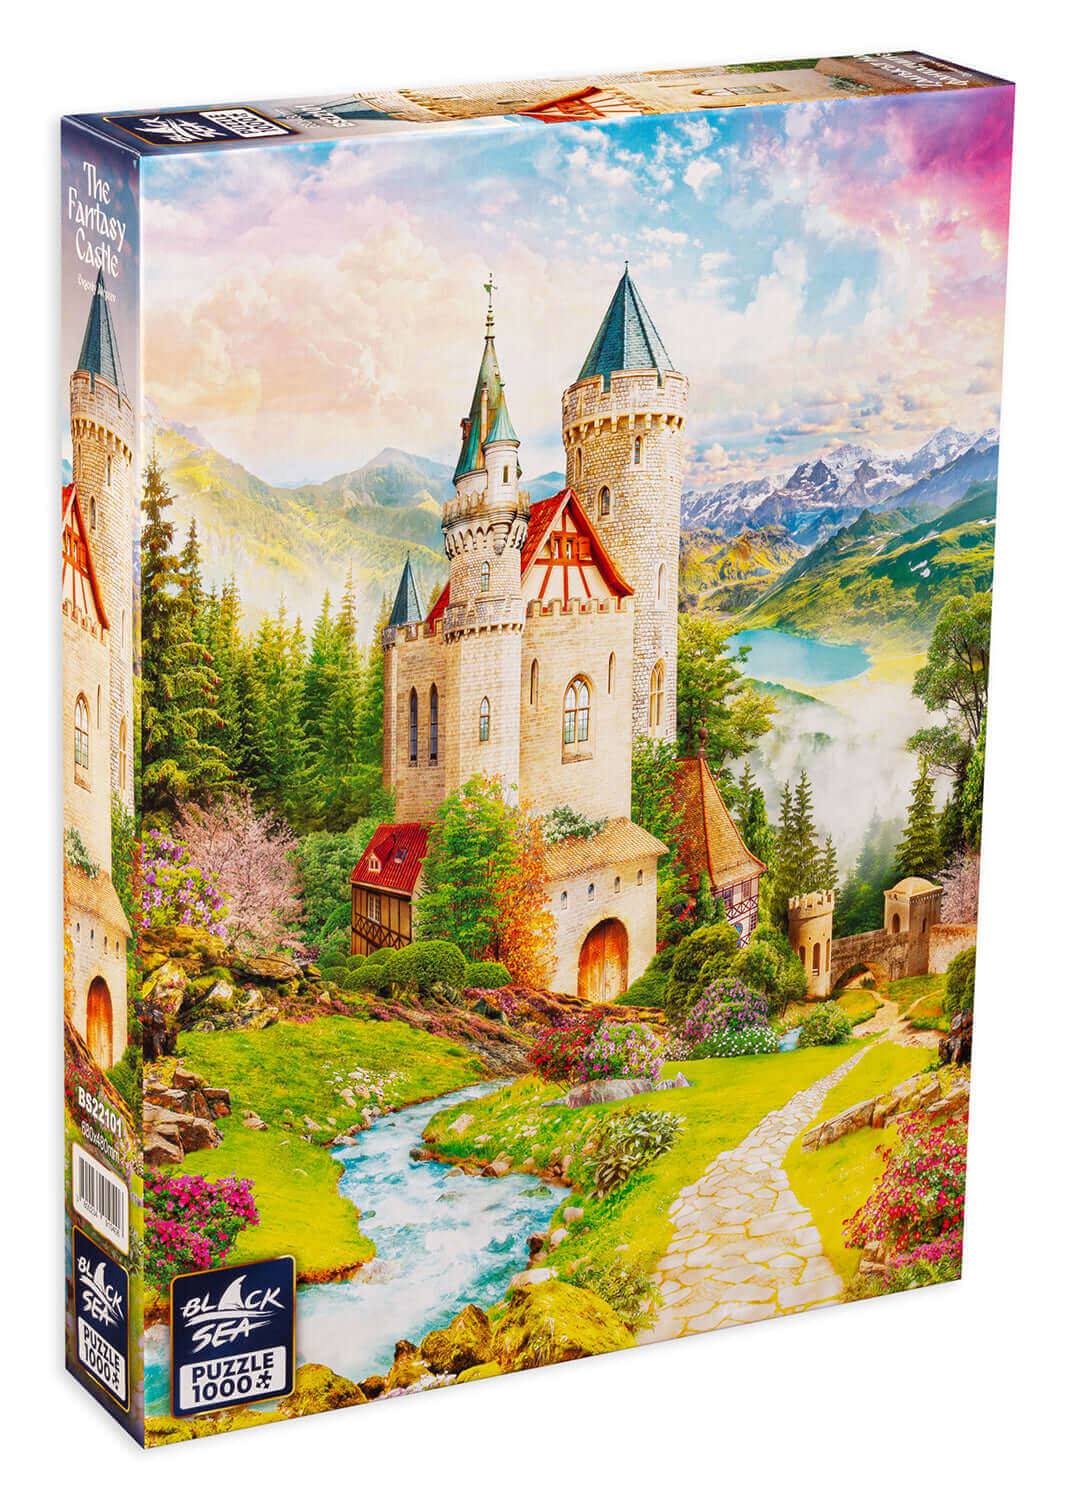 Puzzle Black Sea 1000 pieces - The Fantasy Castle